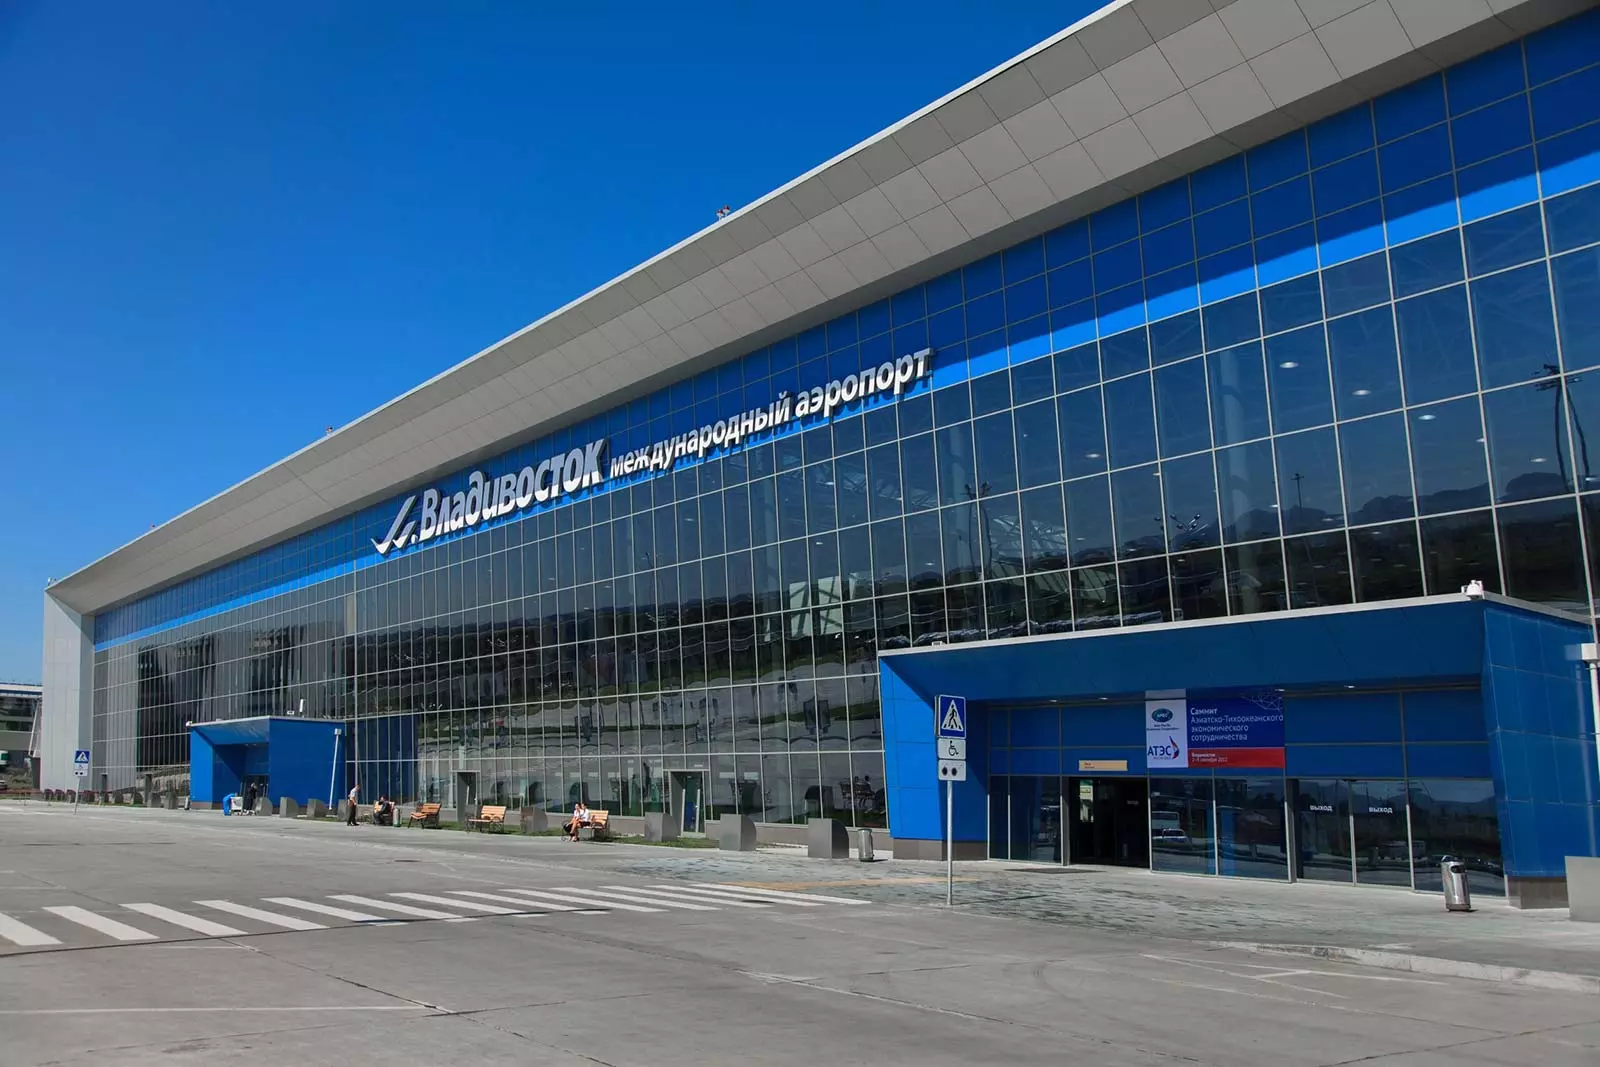 Аэропорт кневичи владивосток — расписание рейсов, авиабилеты